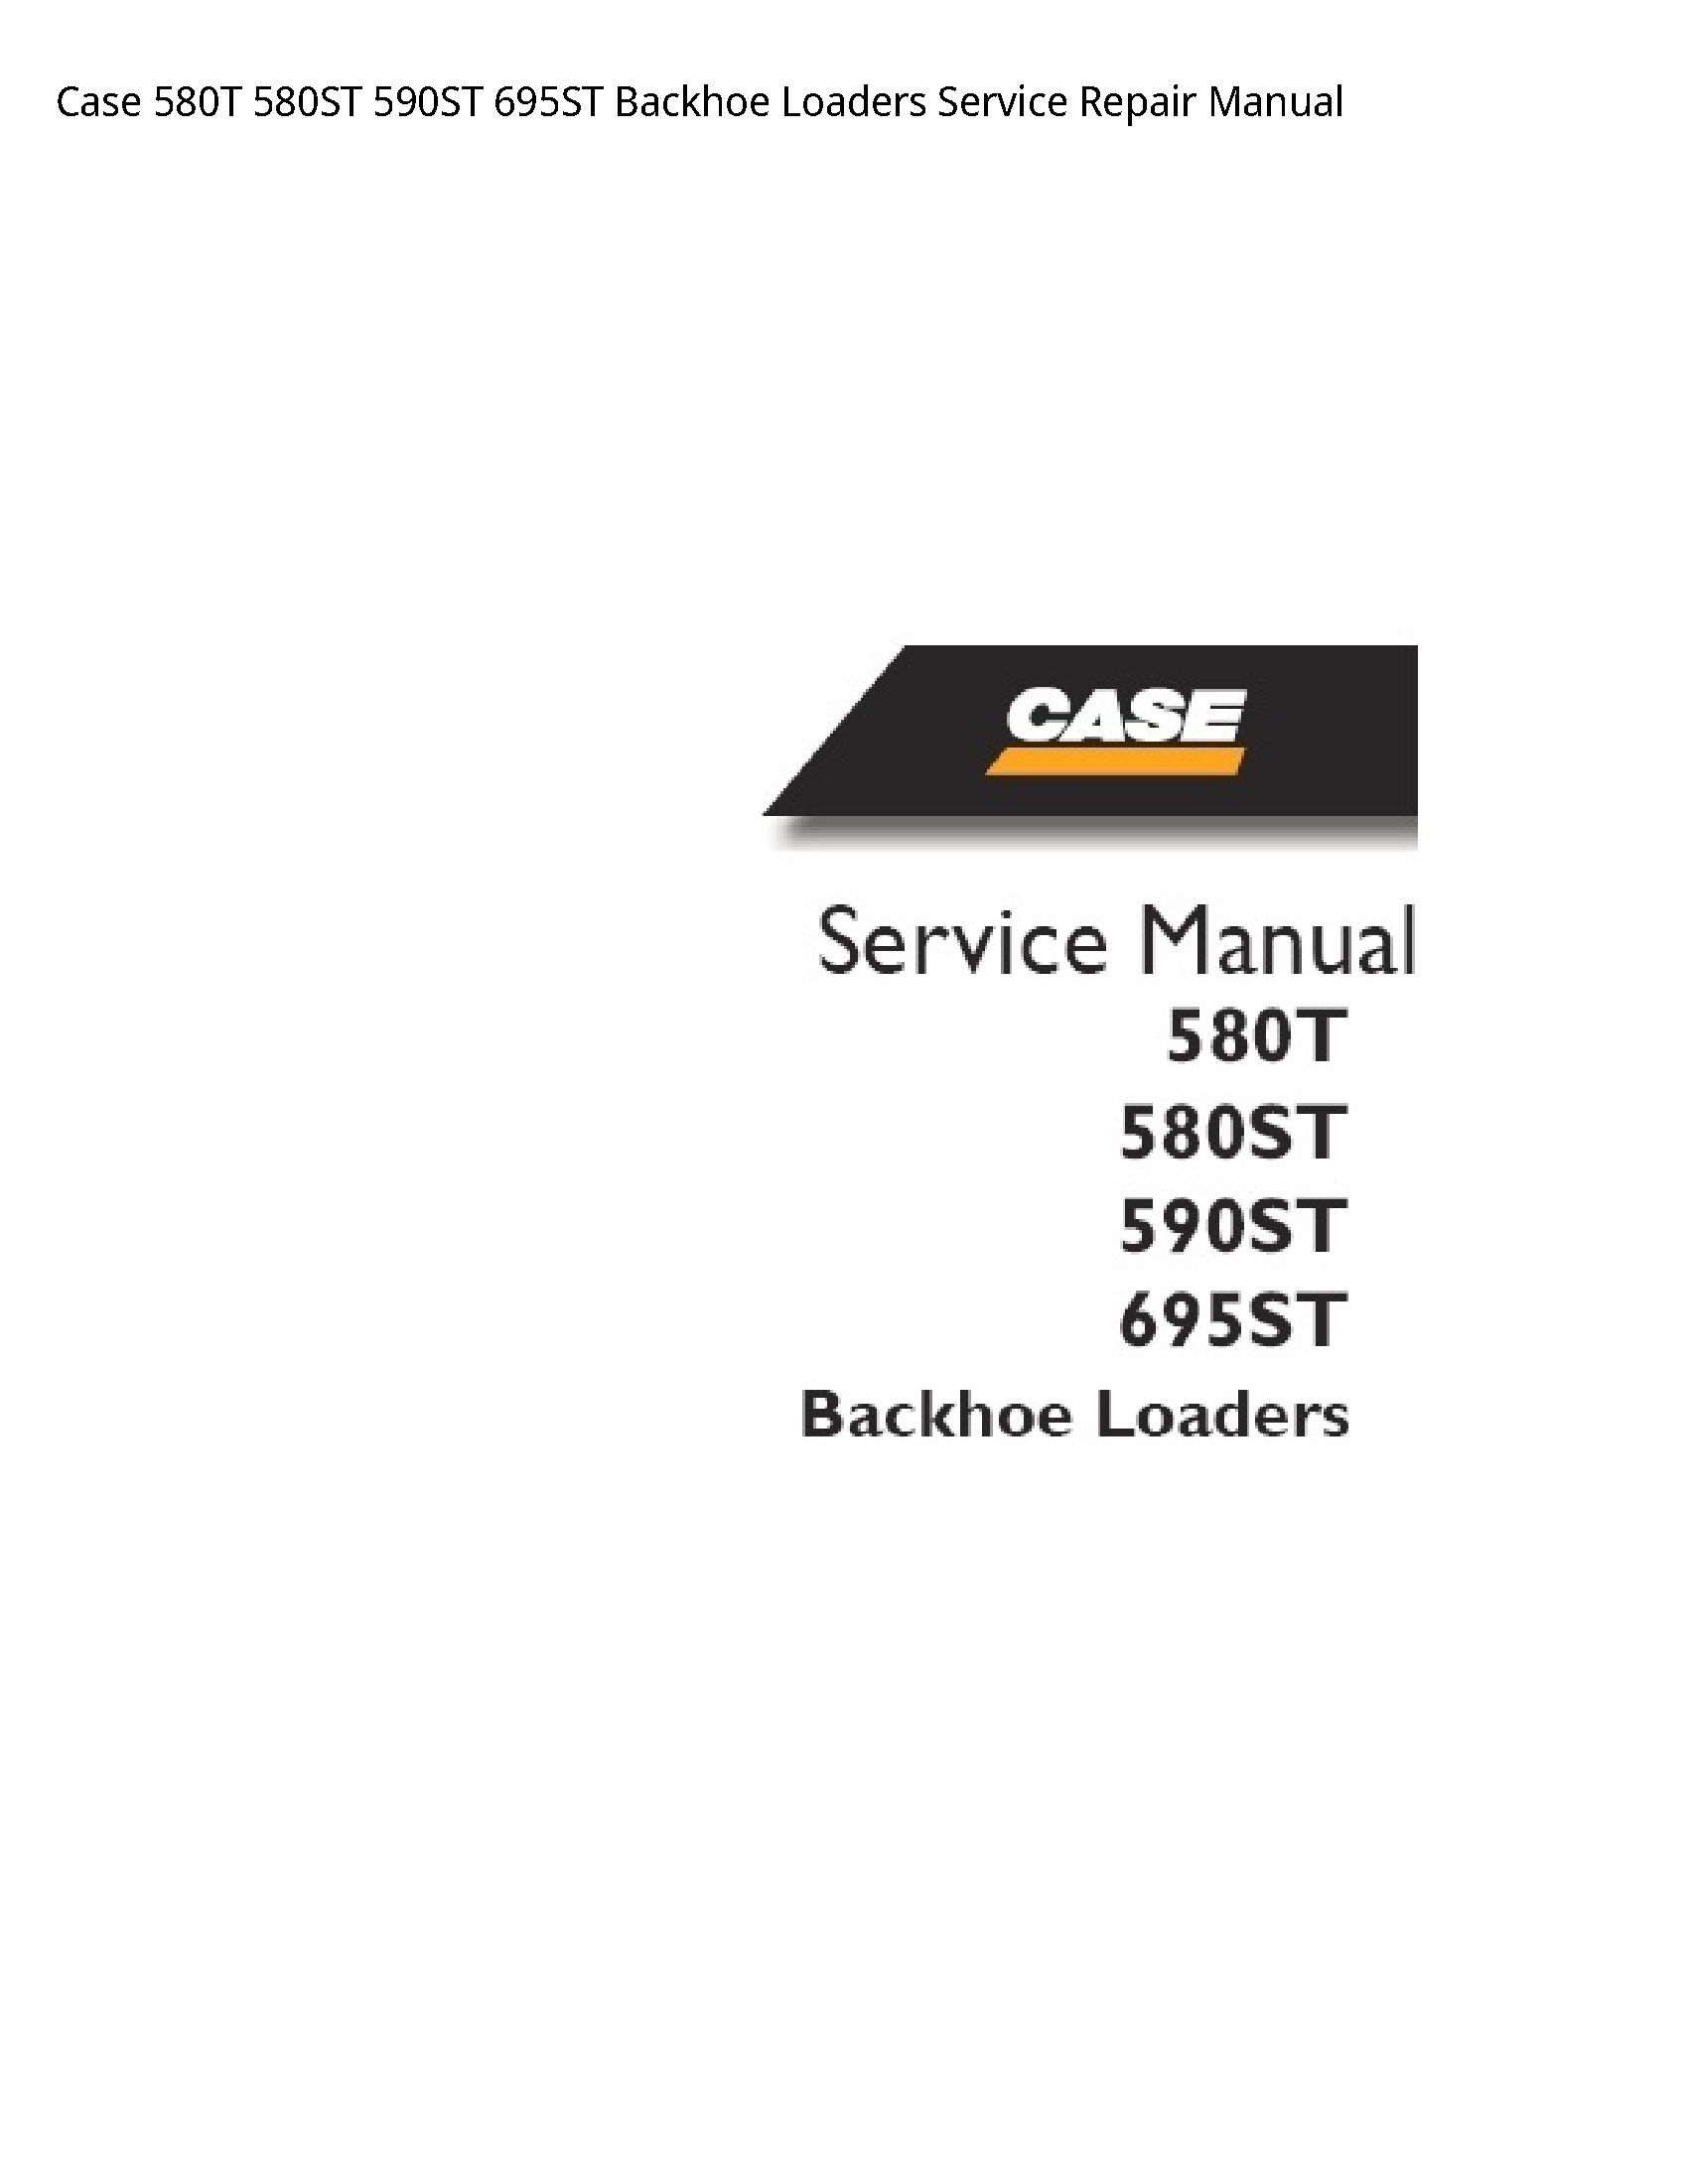 Case/Case IH 580T Backhoe Loaders manual